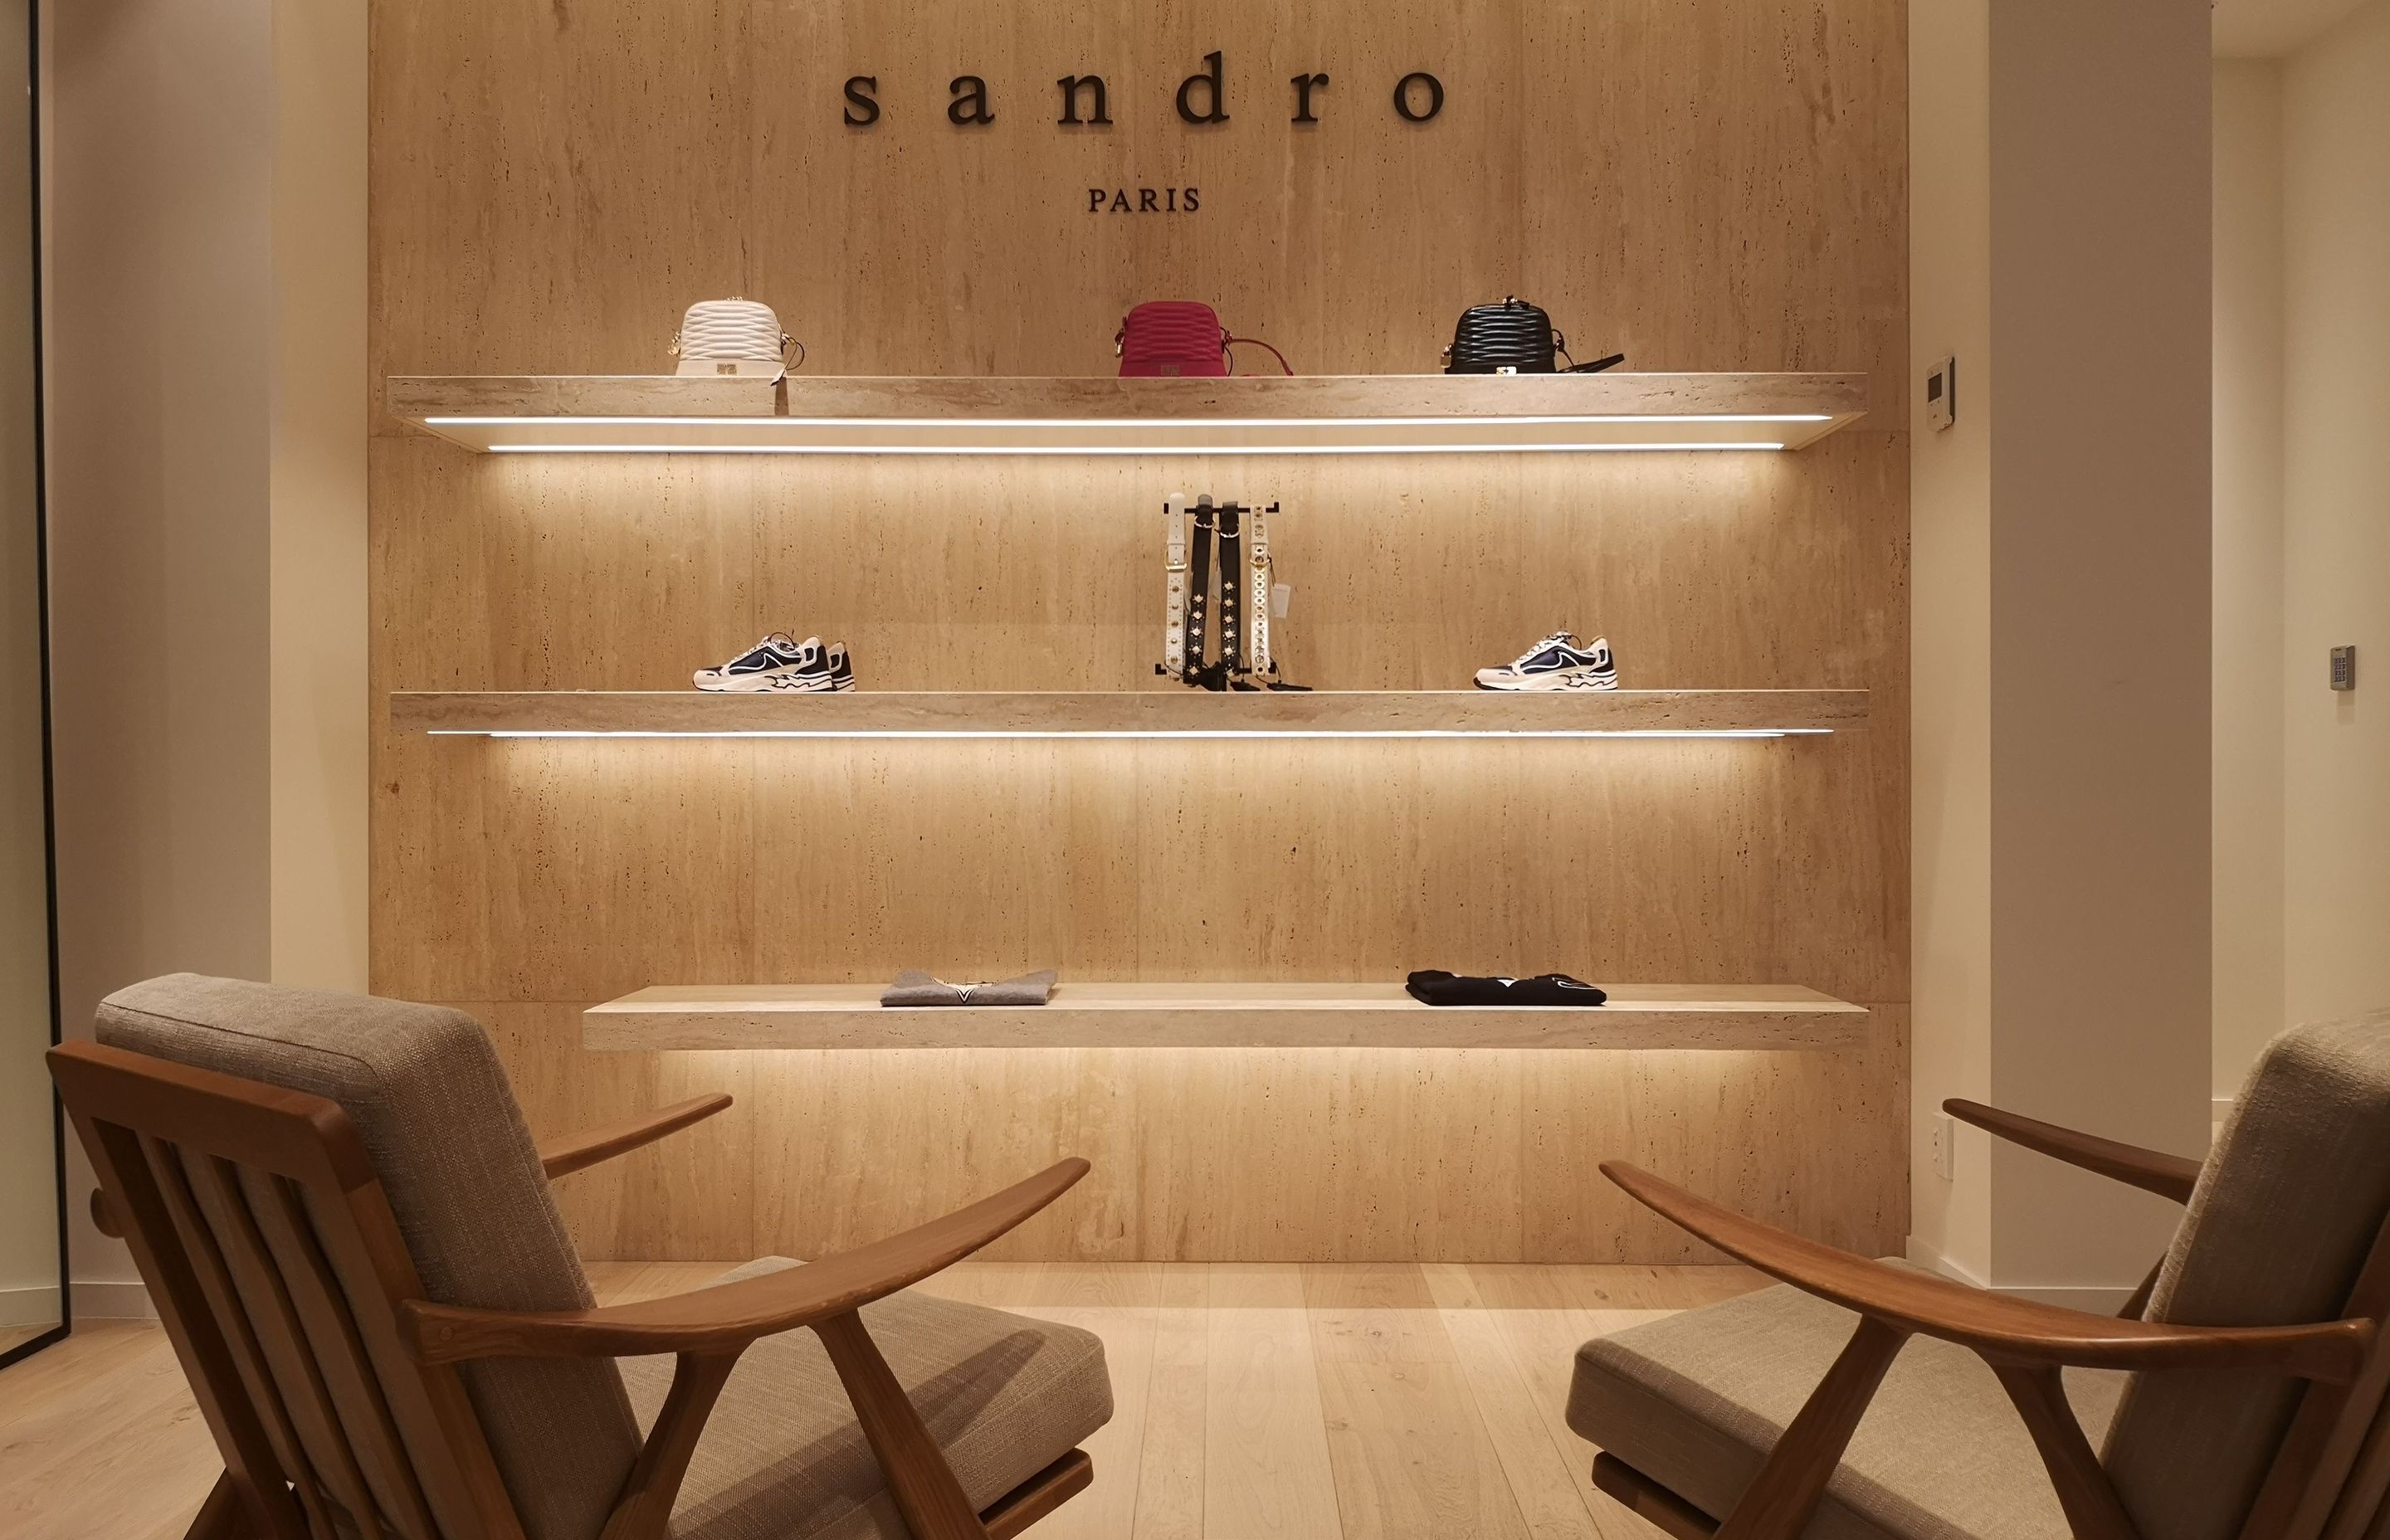 Sandro Paris Retail - Commercial Bay Precinct